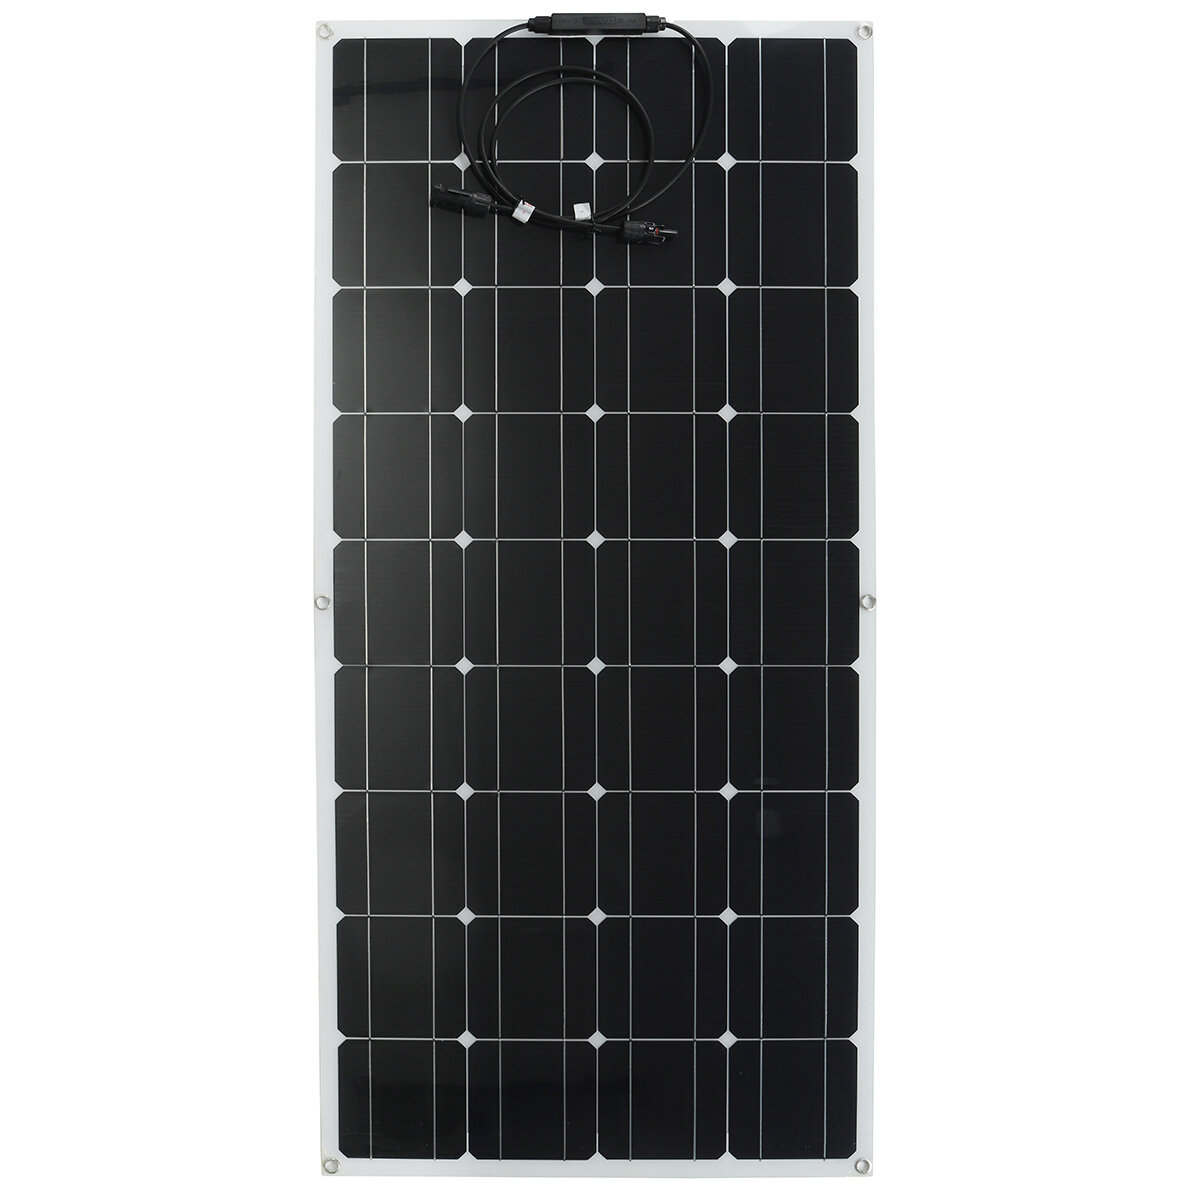 120W Солнечная Панель 12V Солнечная Power Bank Портативные устройства питания Кемпинг Van Travel Home